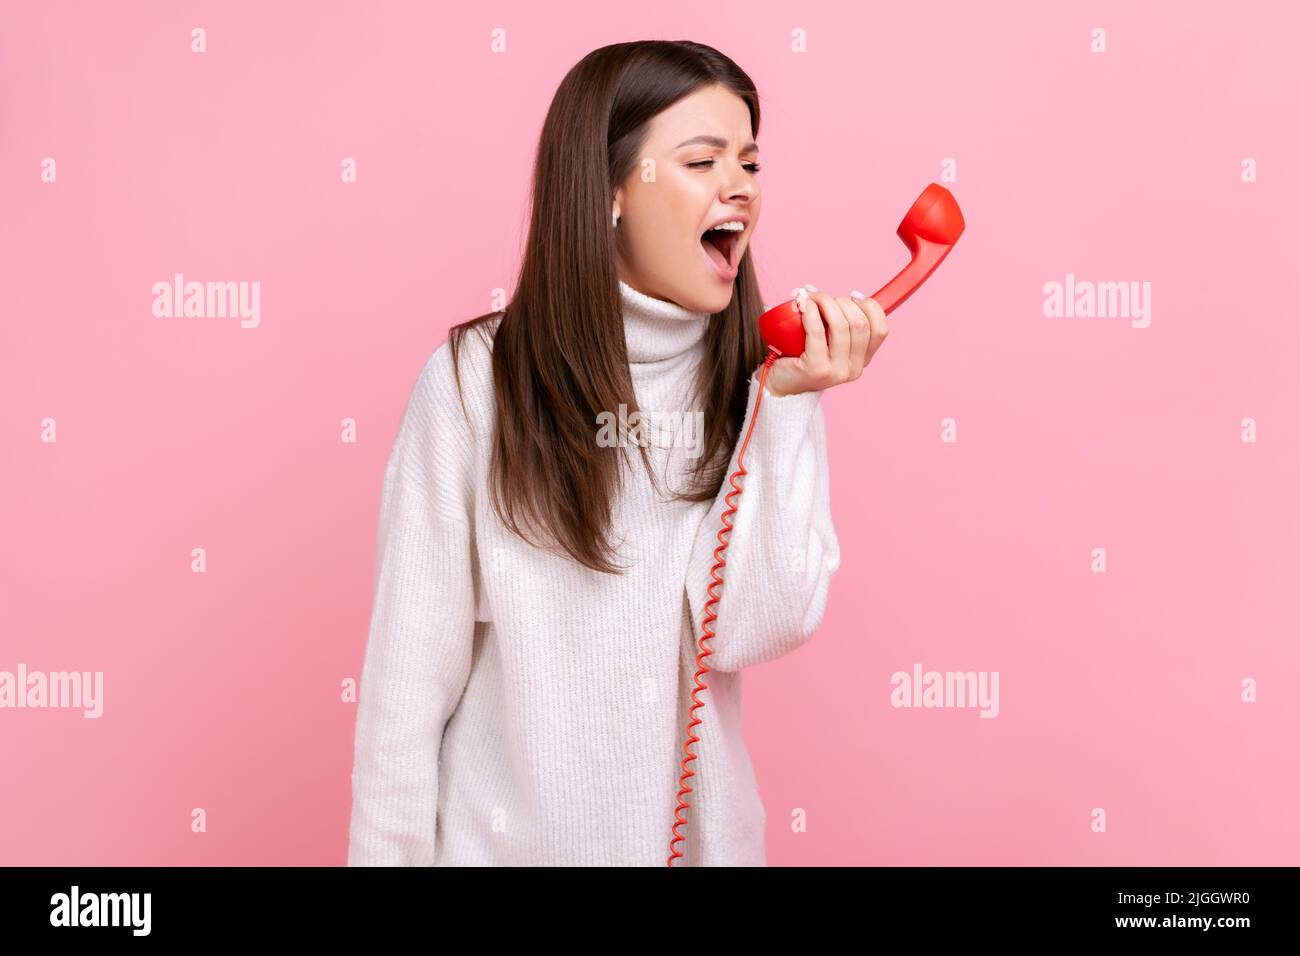 Wütend junge Brünette Frau schreiend auf roten Retro-Hörer, zum Ausdruck Aggression, ärgerlich Client, trägt weißen lässigen Stil Pullover. Innenaufnahme des Studios isoliert auf rosa Hintergrund. Stockfoto